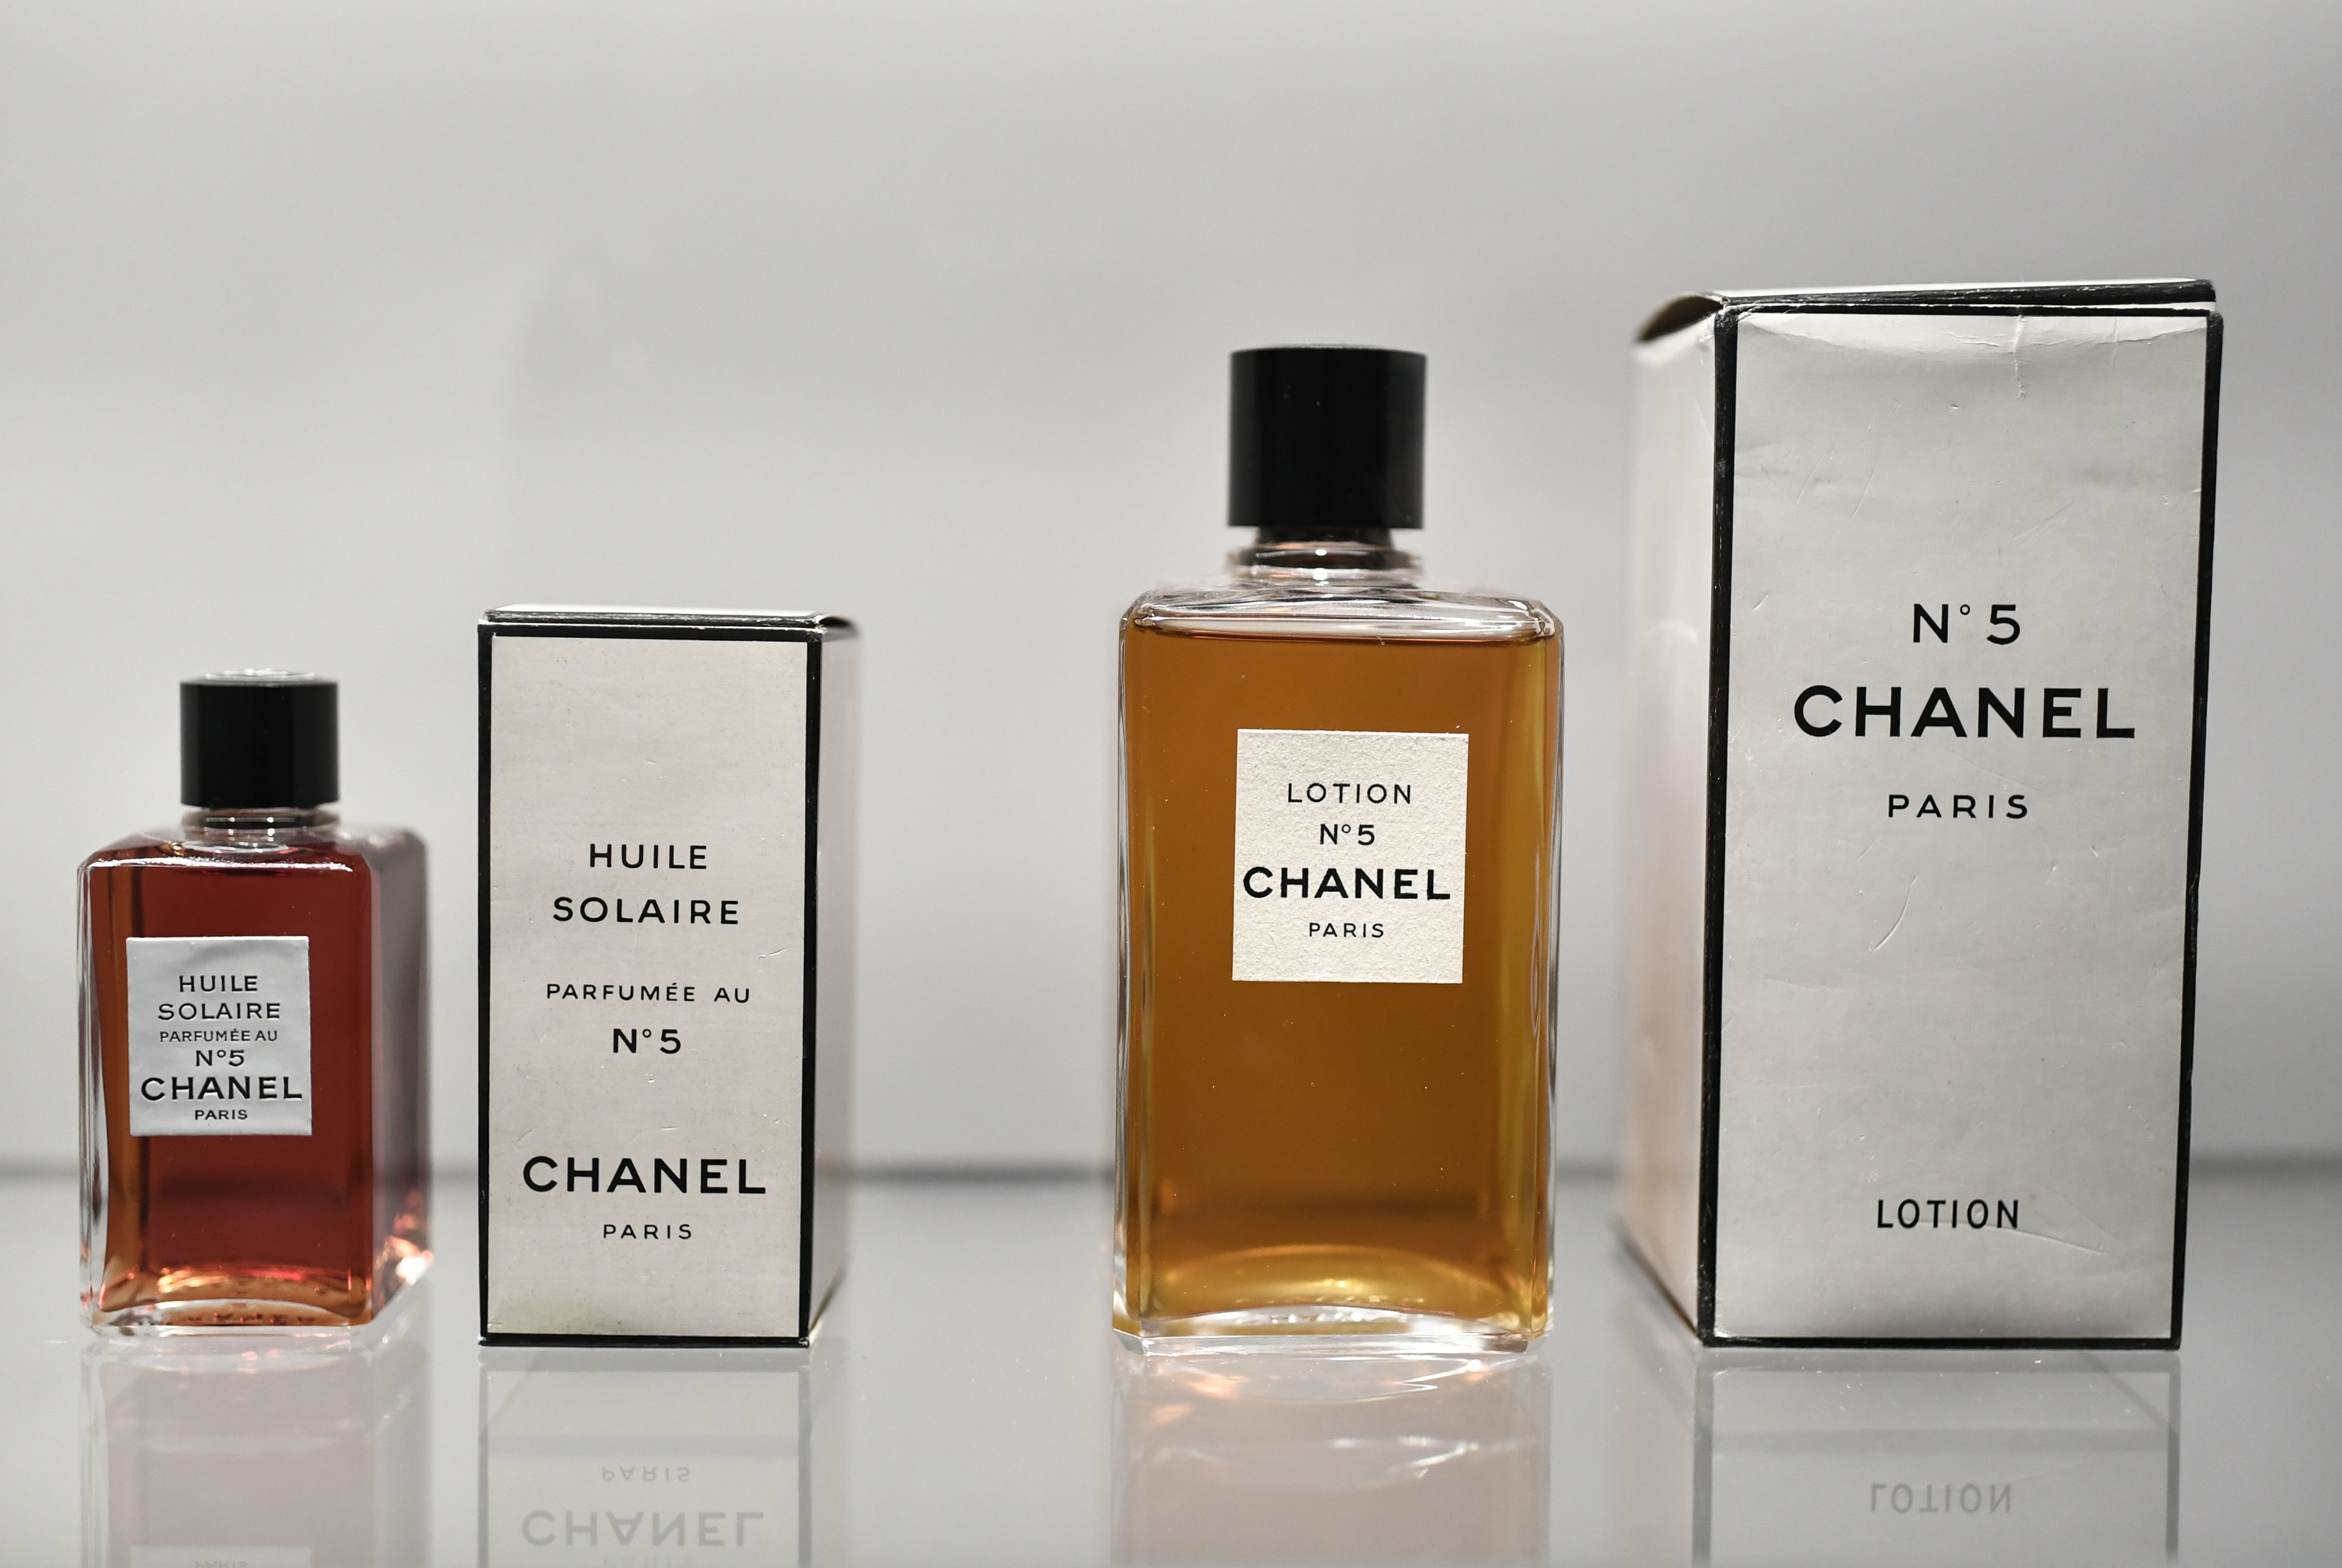 Perfume N'5. El ícono creado por Coco Chanel cumple cien años - LA NACION